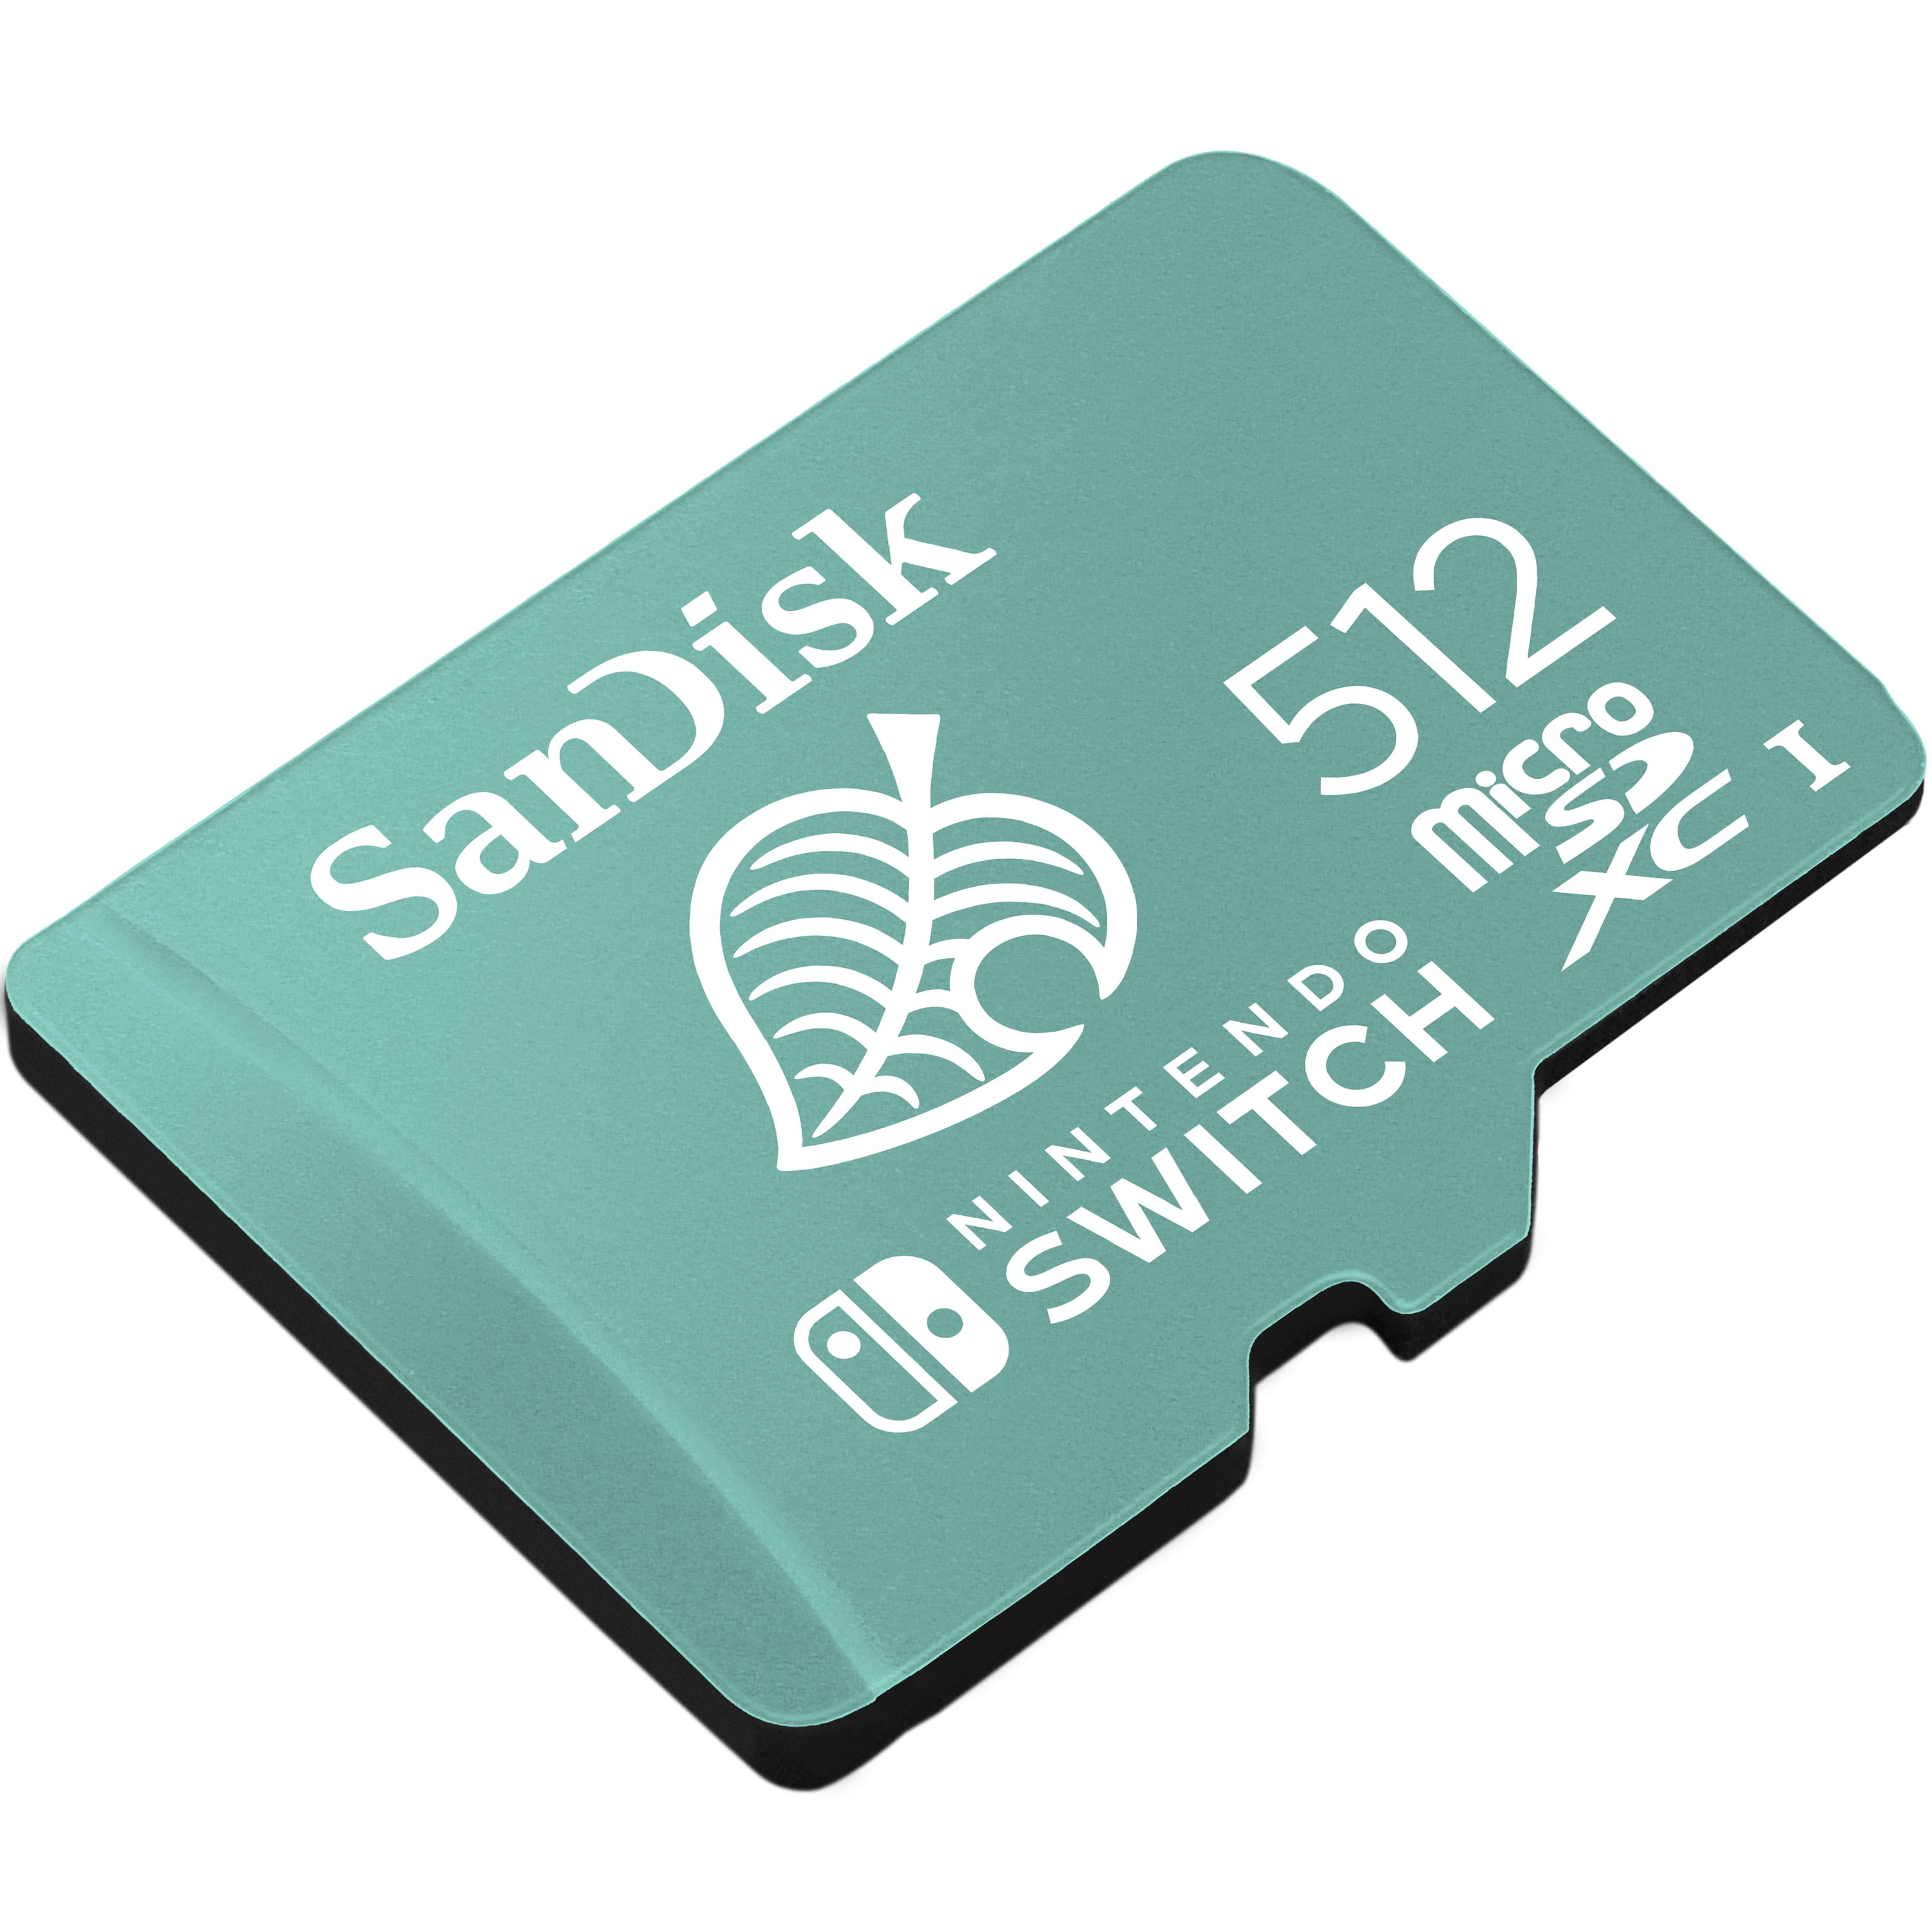 SanDisk 512GB microSDXC UHS-I Memory Card Licensed for Nintendo